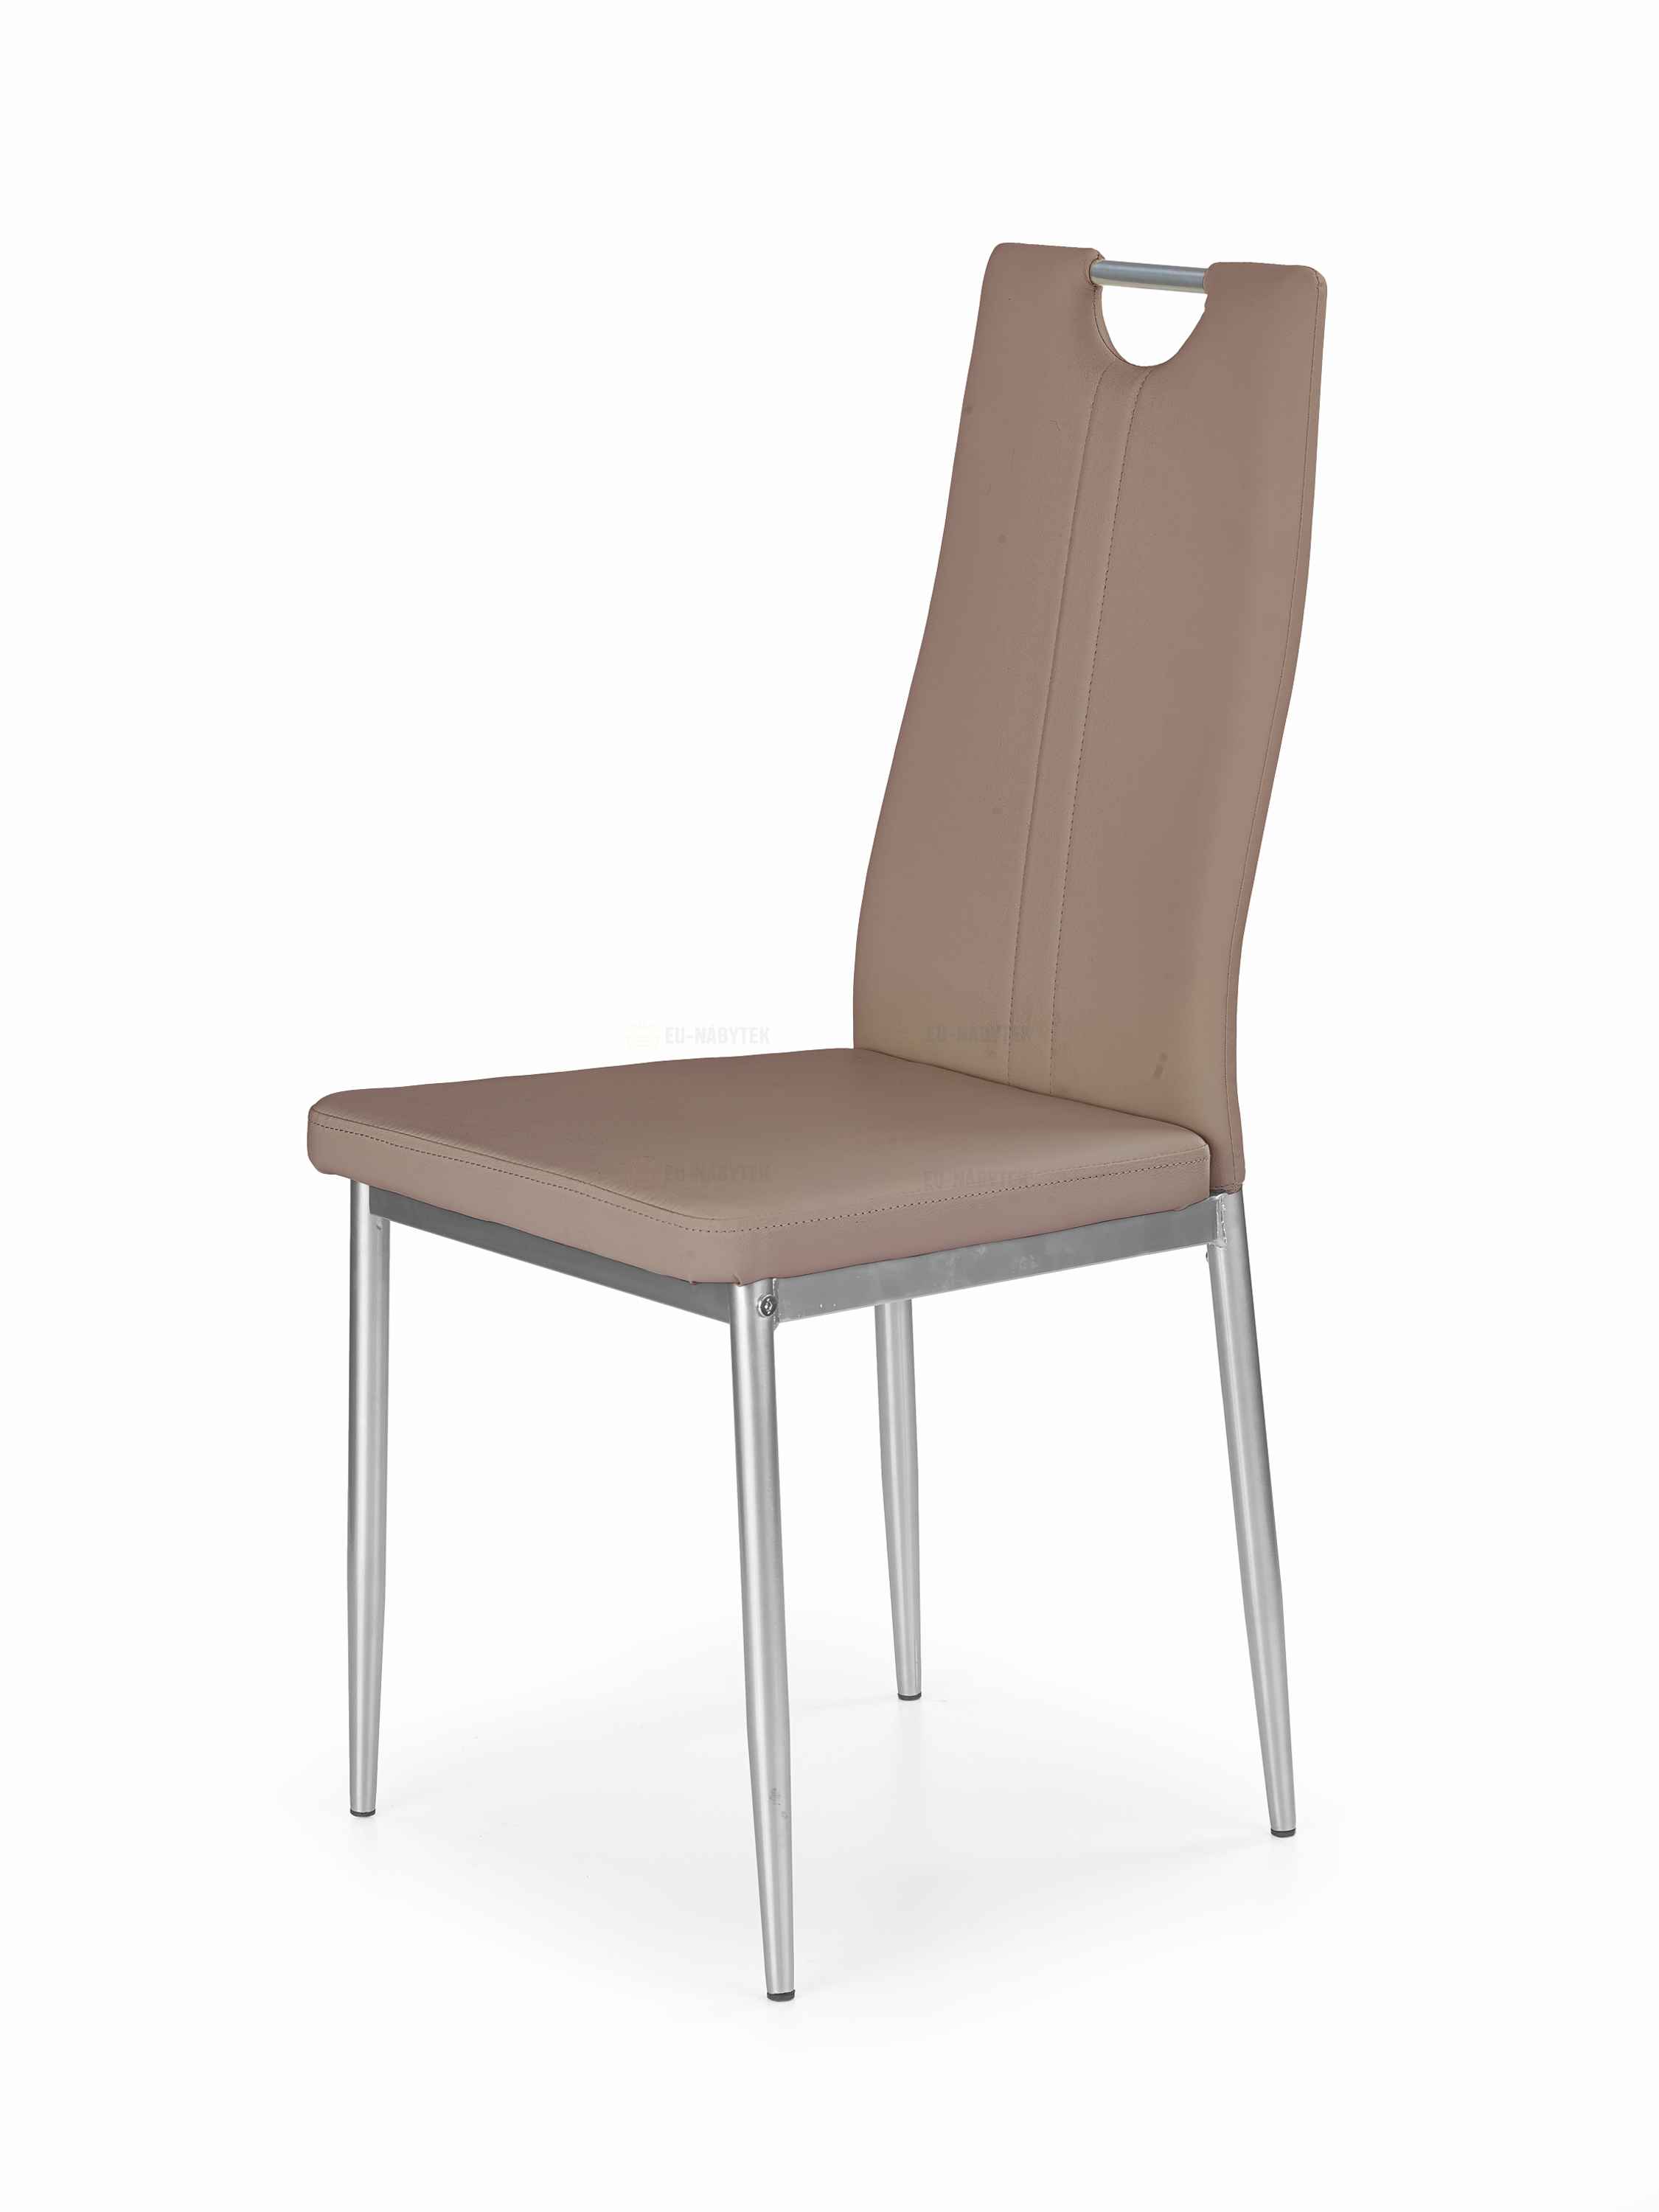 Jídelní židle K202 cappucino